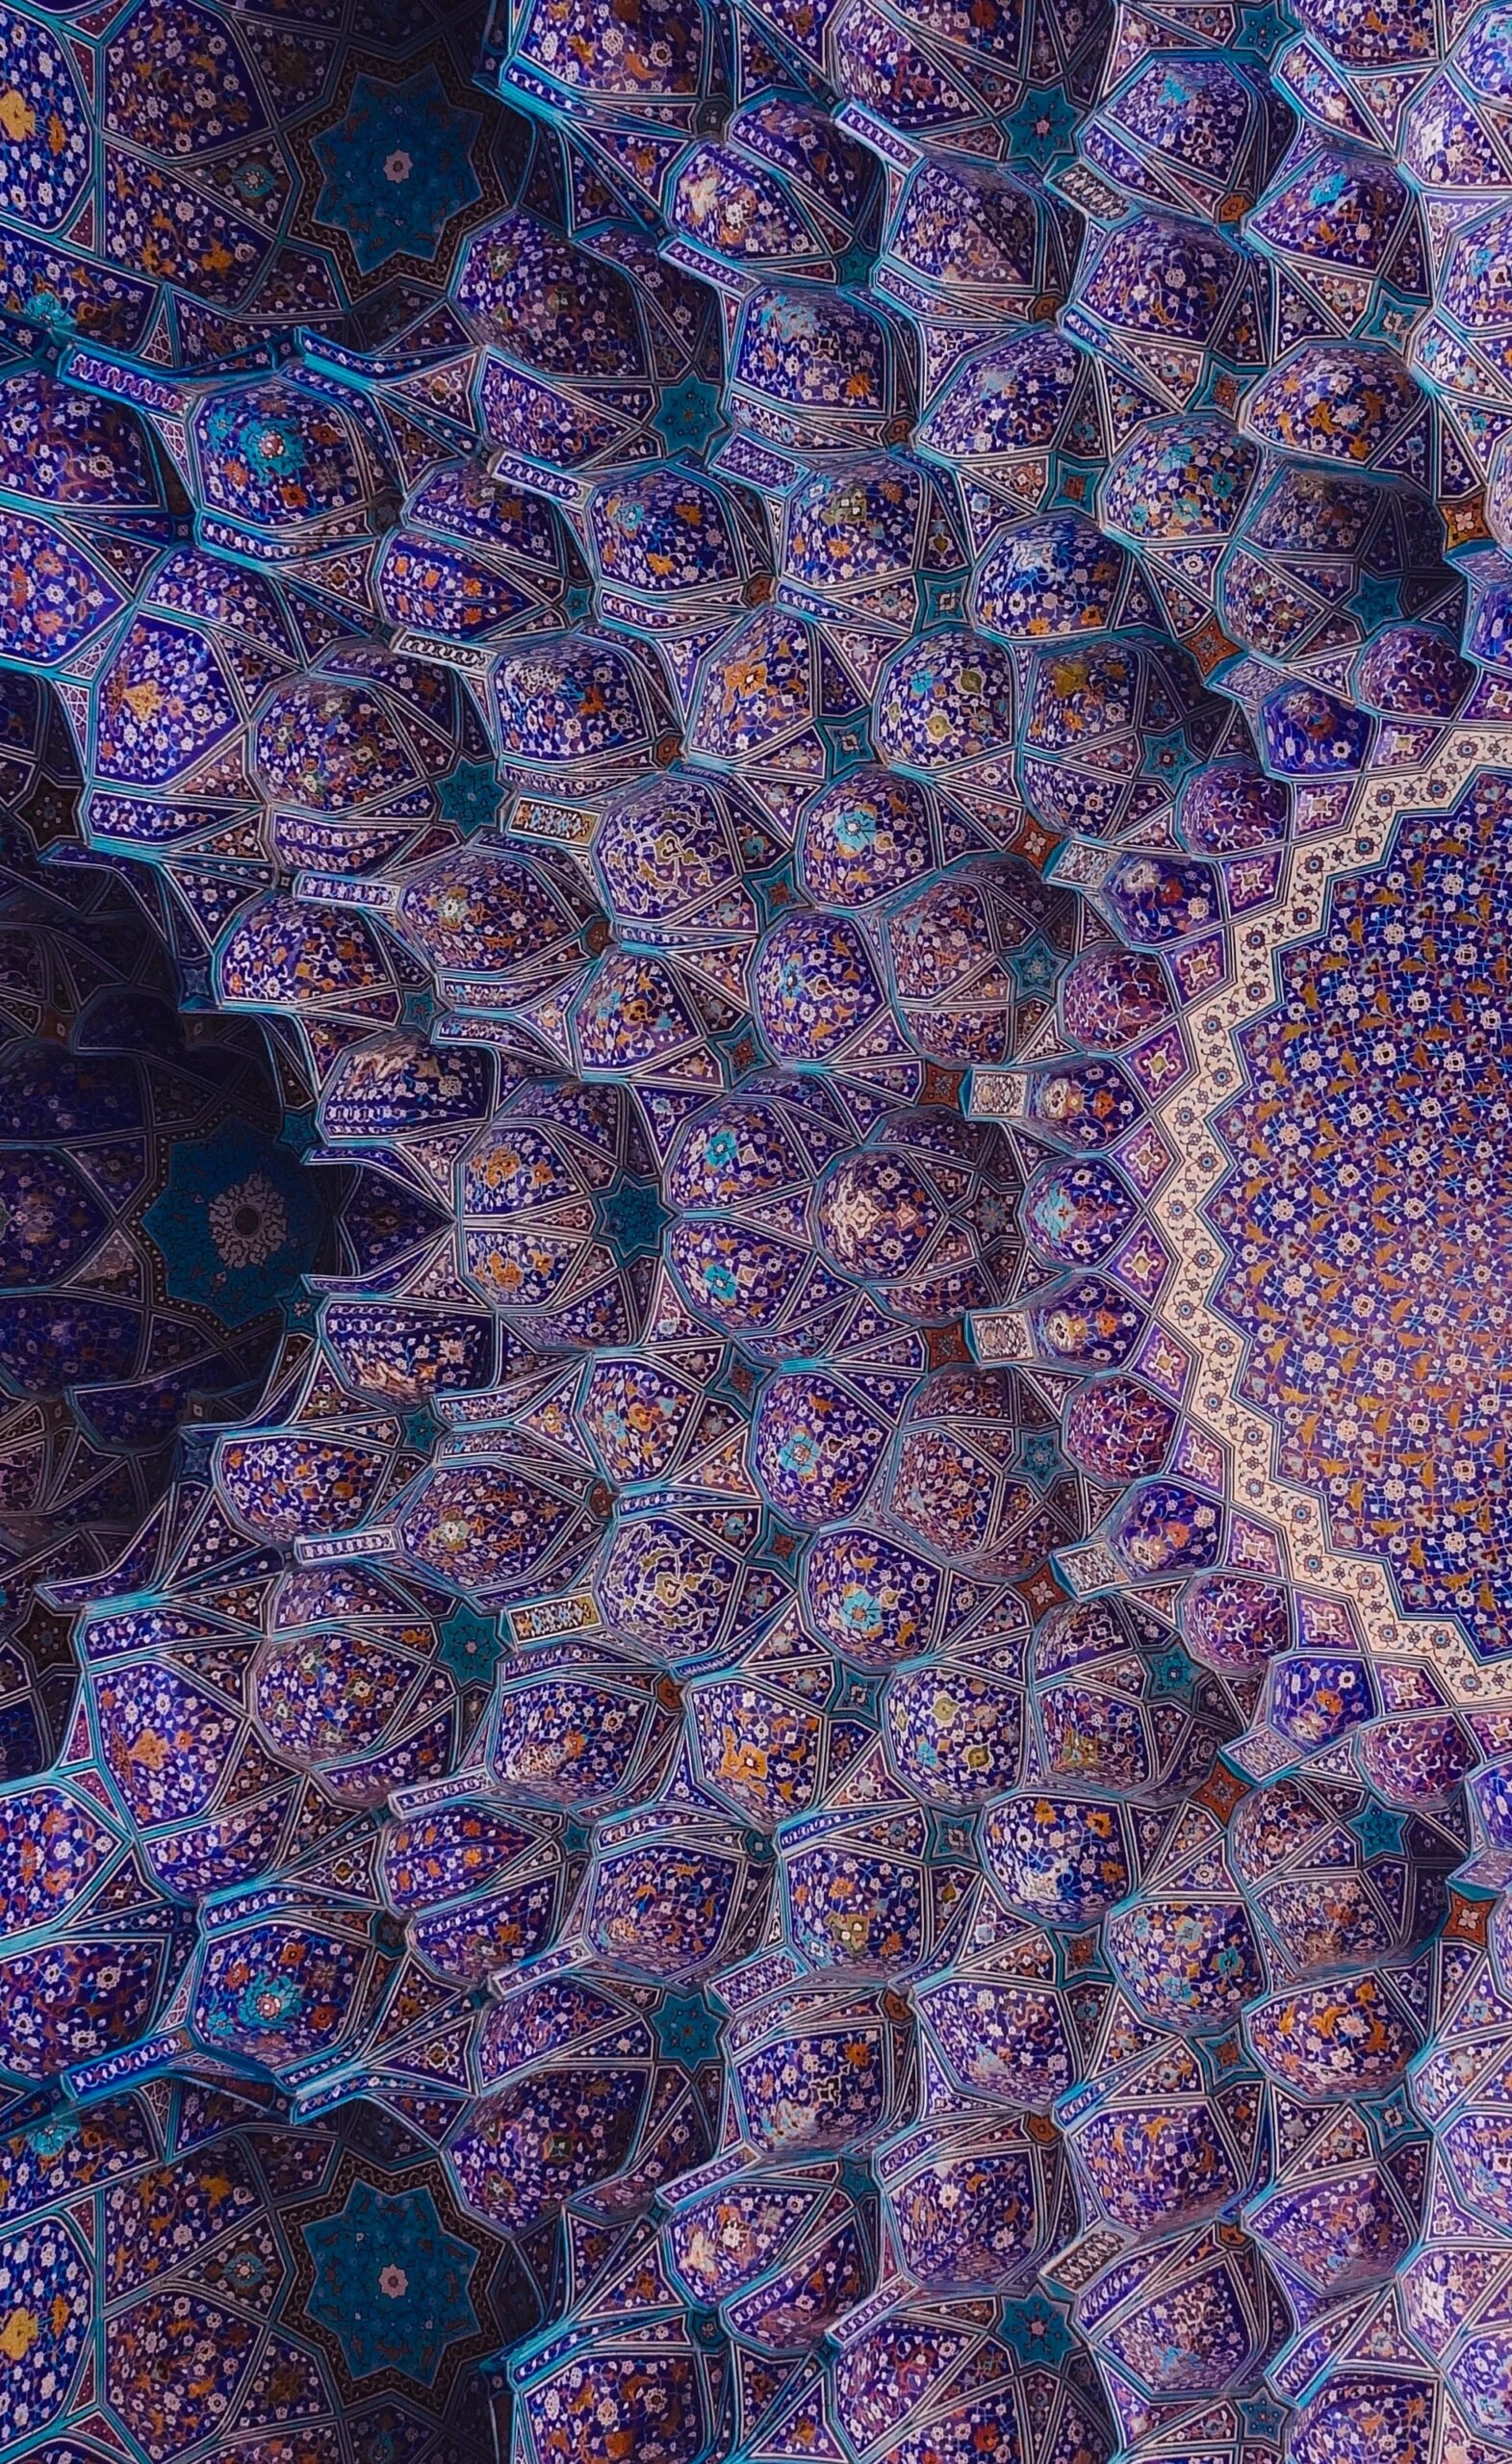 Beautiful and intricate purple pattern